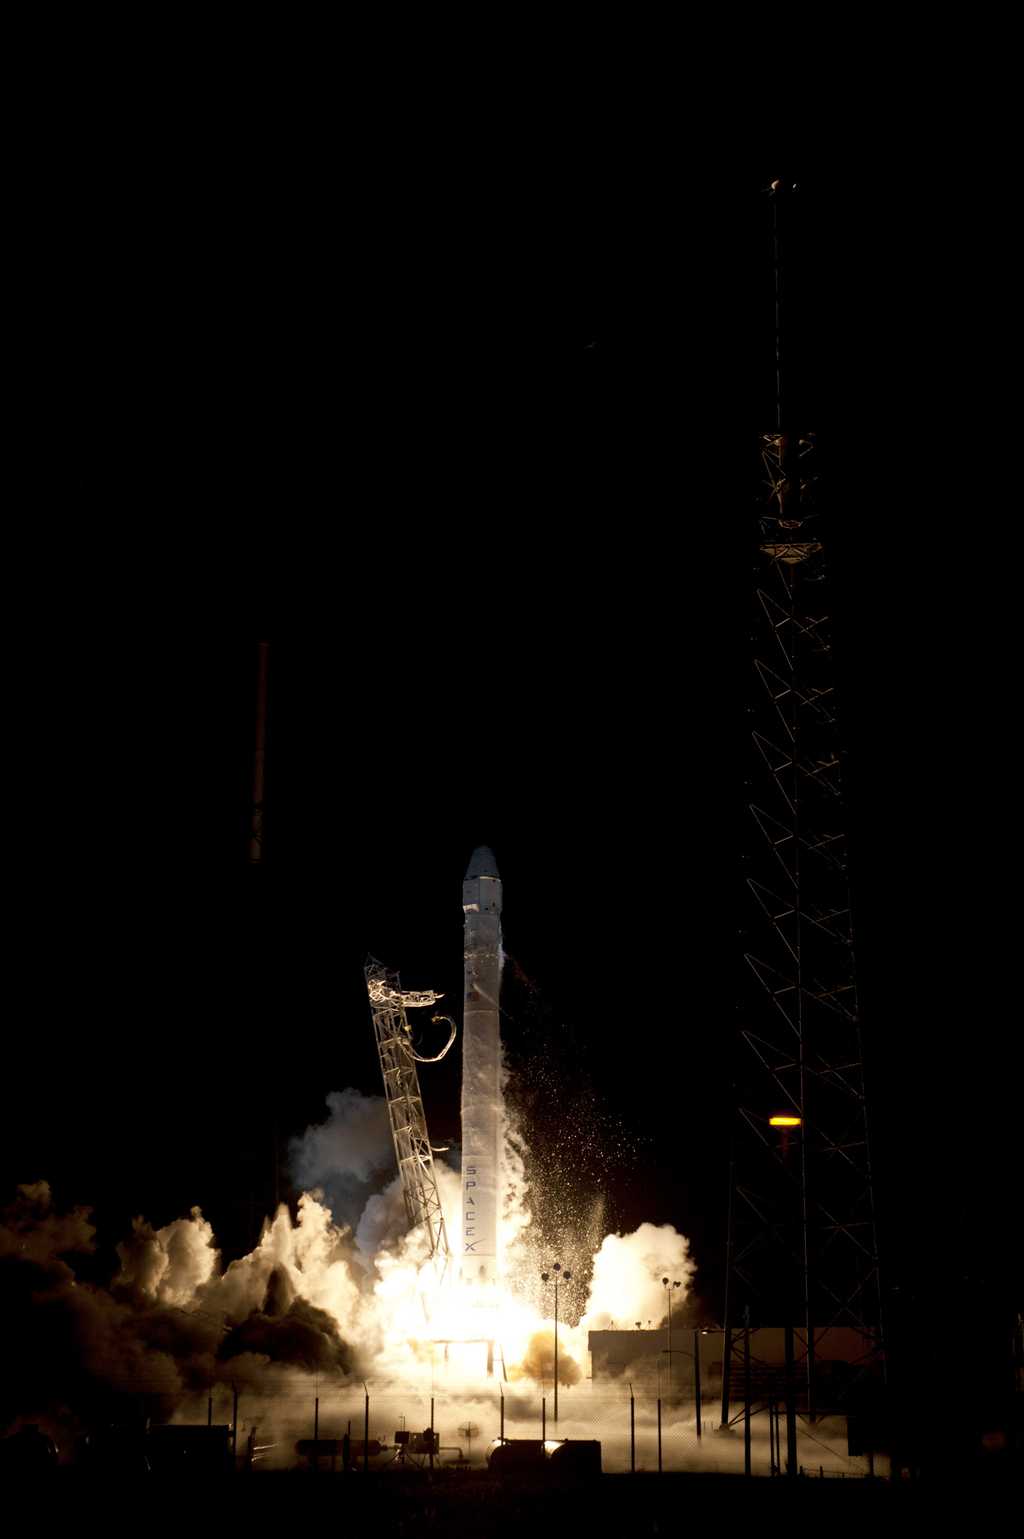 Premier lancement commercial pour la Nasa, mais également premier lancement sans report, le Falcon-9 de SpaceX, dont une version évoluée pourrait lancer des astronautes, fait d'indéniables progrès. Quant à la perte d'un de ses moteurs, les spécialistes attendront les explications de SpaceX avant d'en tirer des conclusions. © Nasa